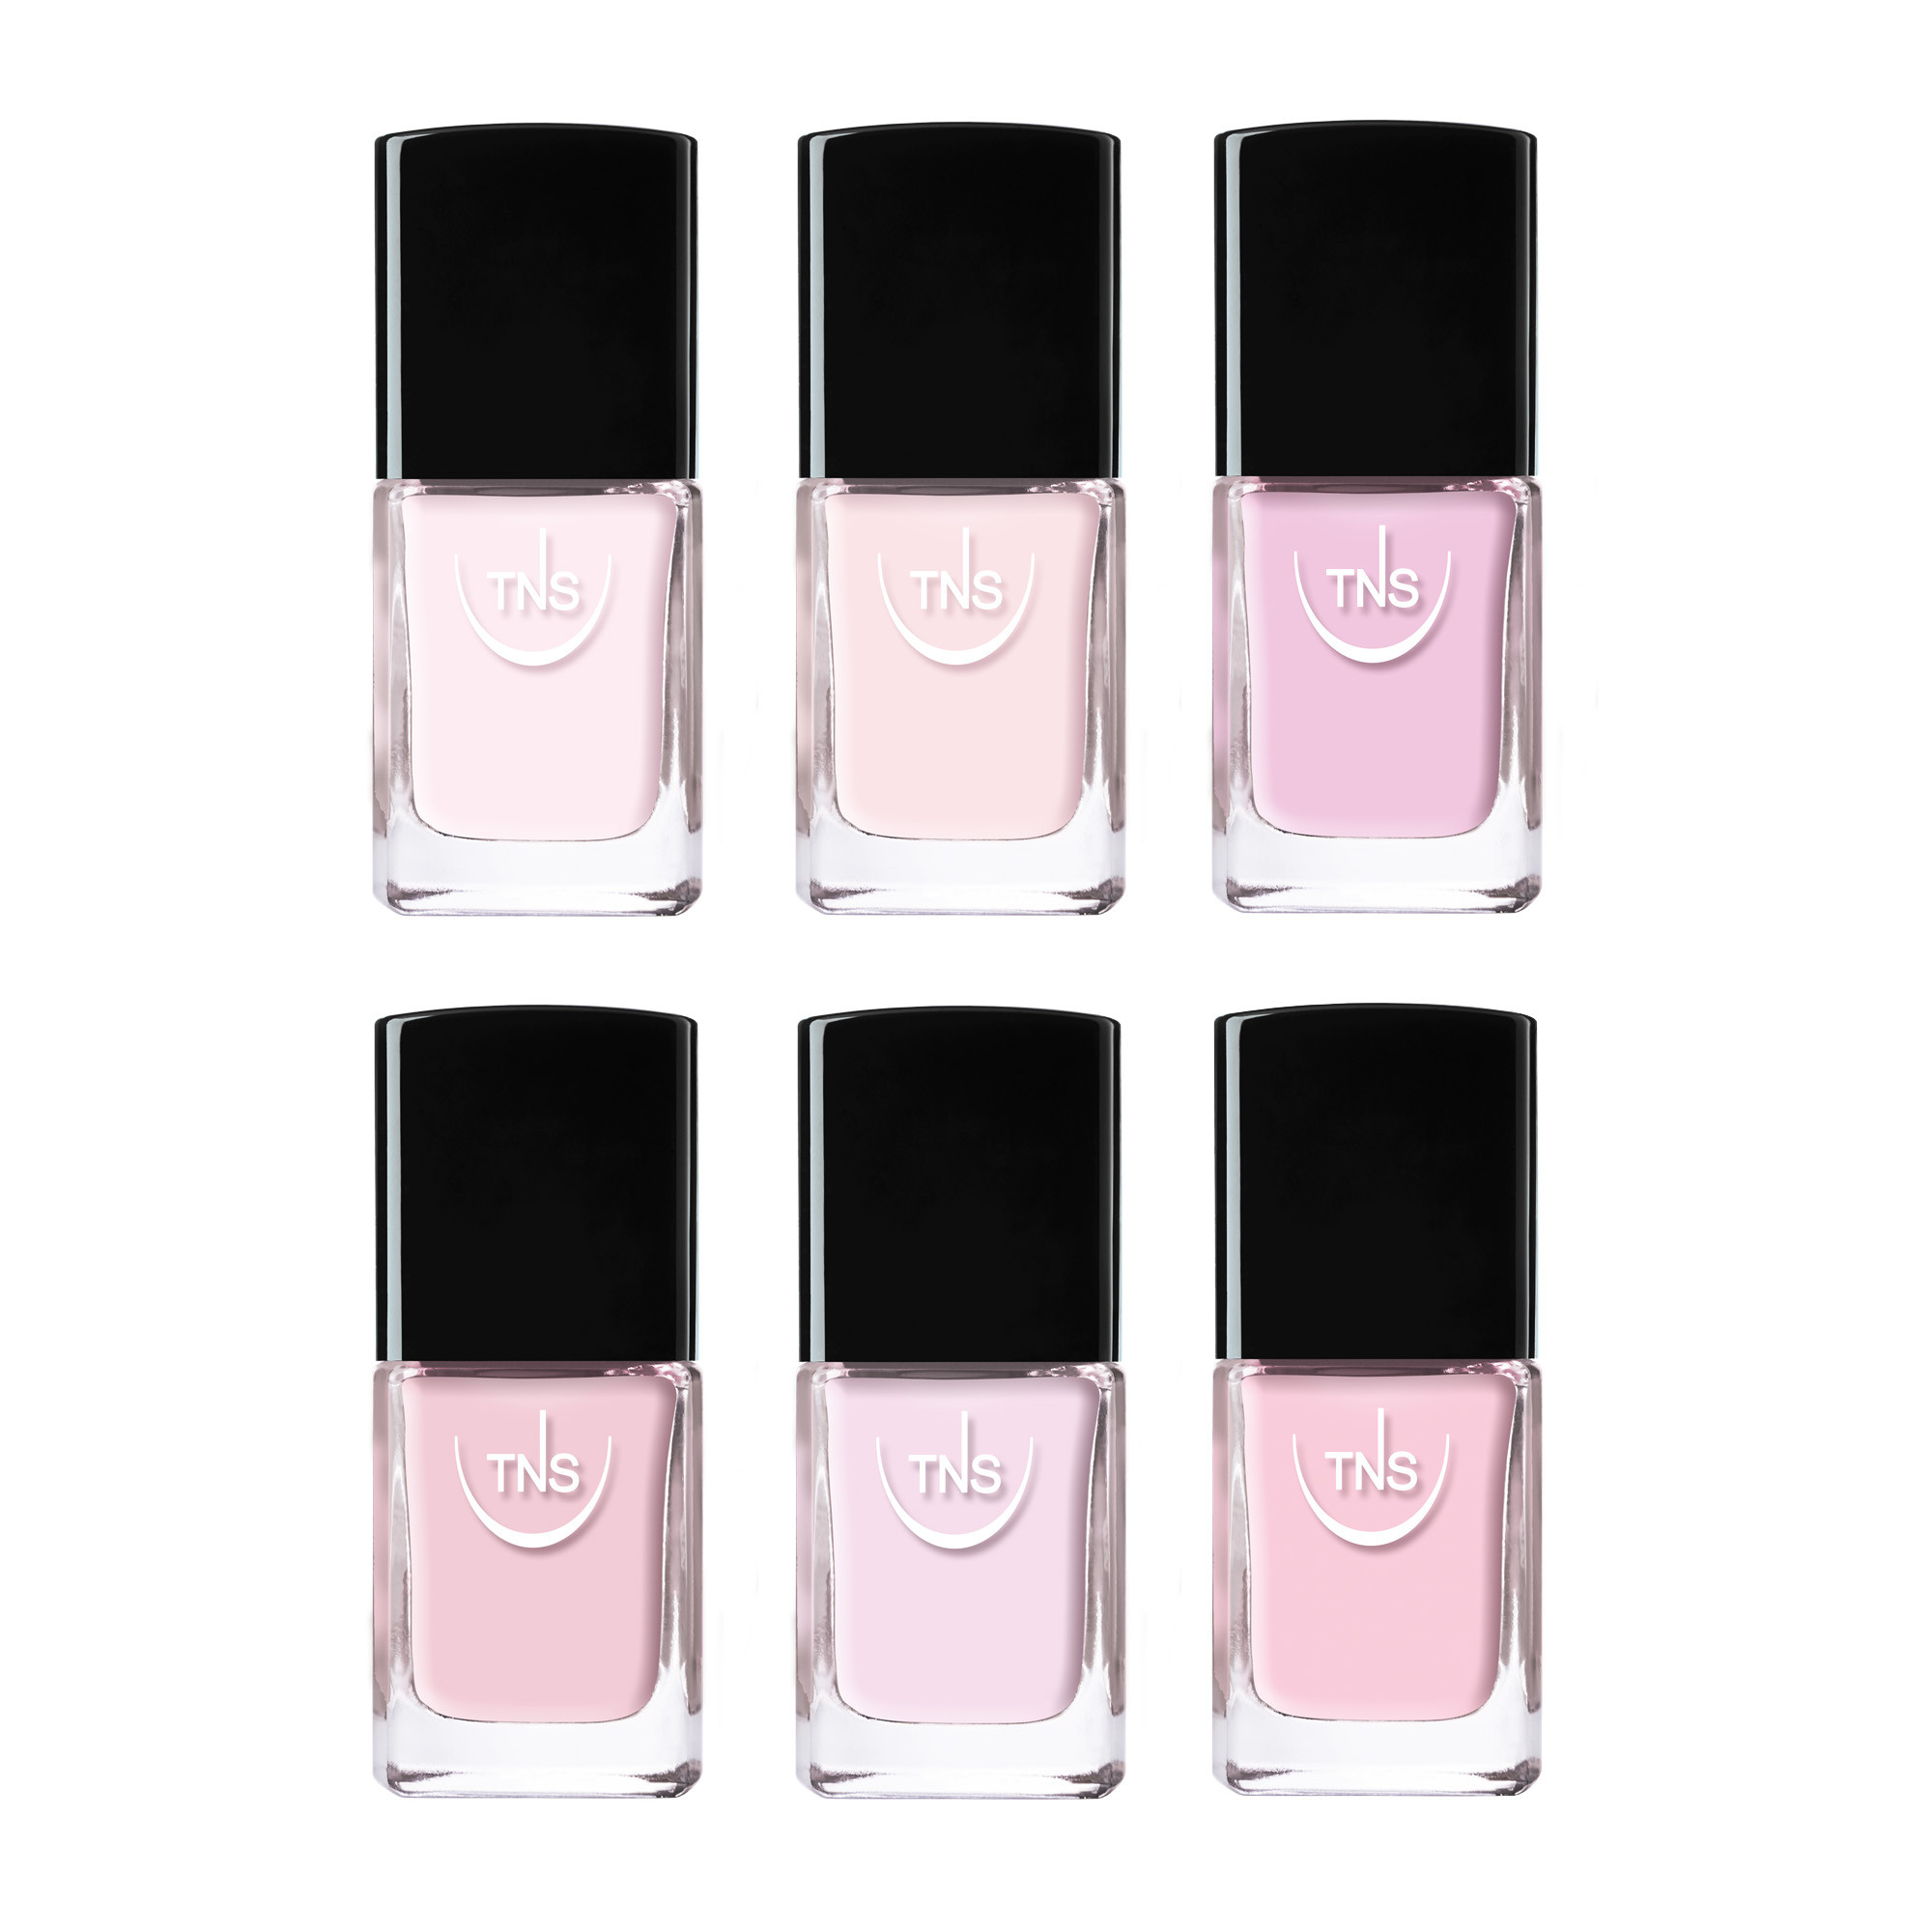 TNS Vanity Roses pink nail polish 24-pack display